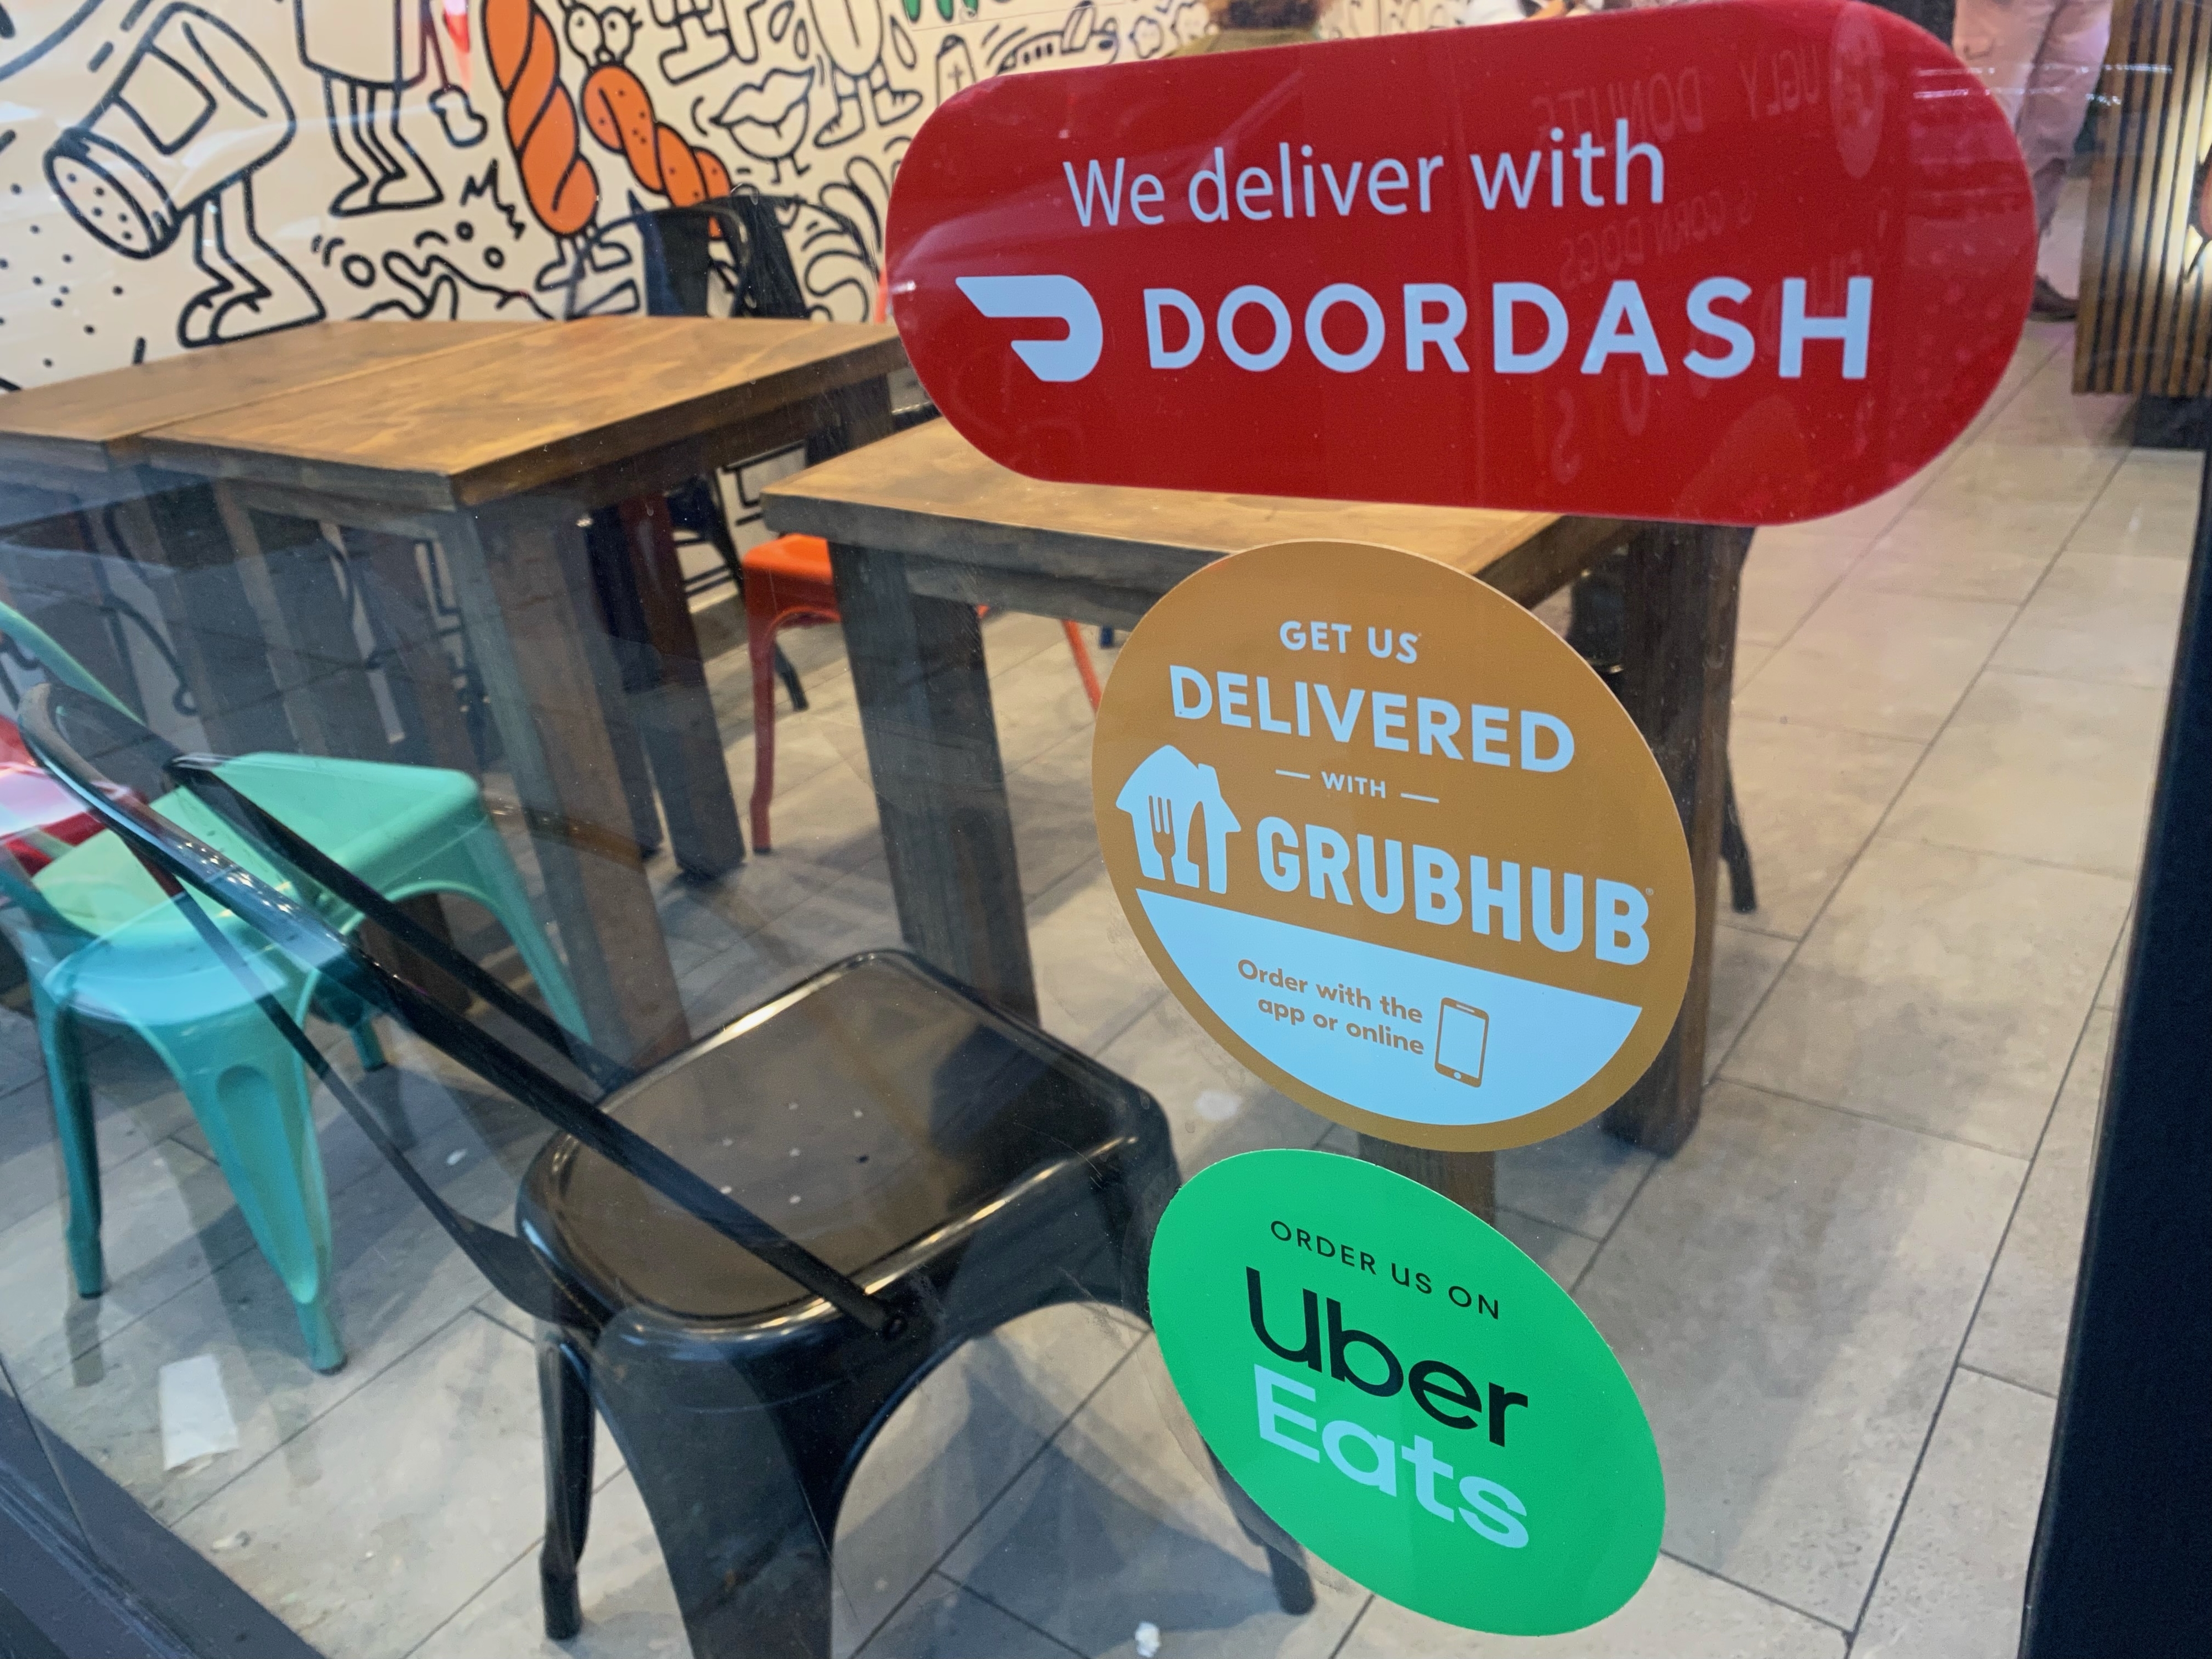 We Deliver, Doordash, Grubhub and Uber Eats signs on restaurant door